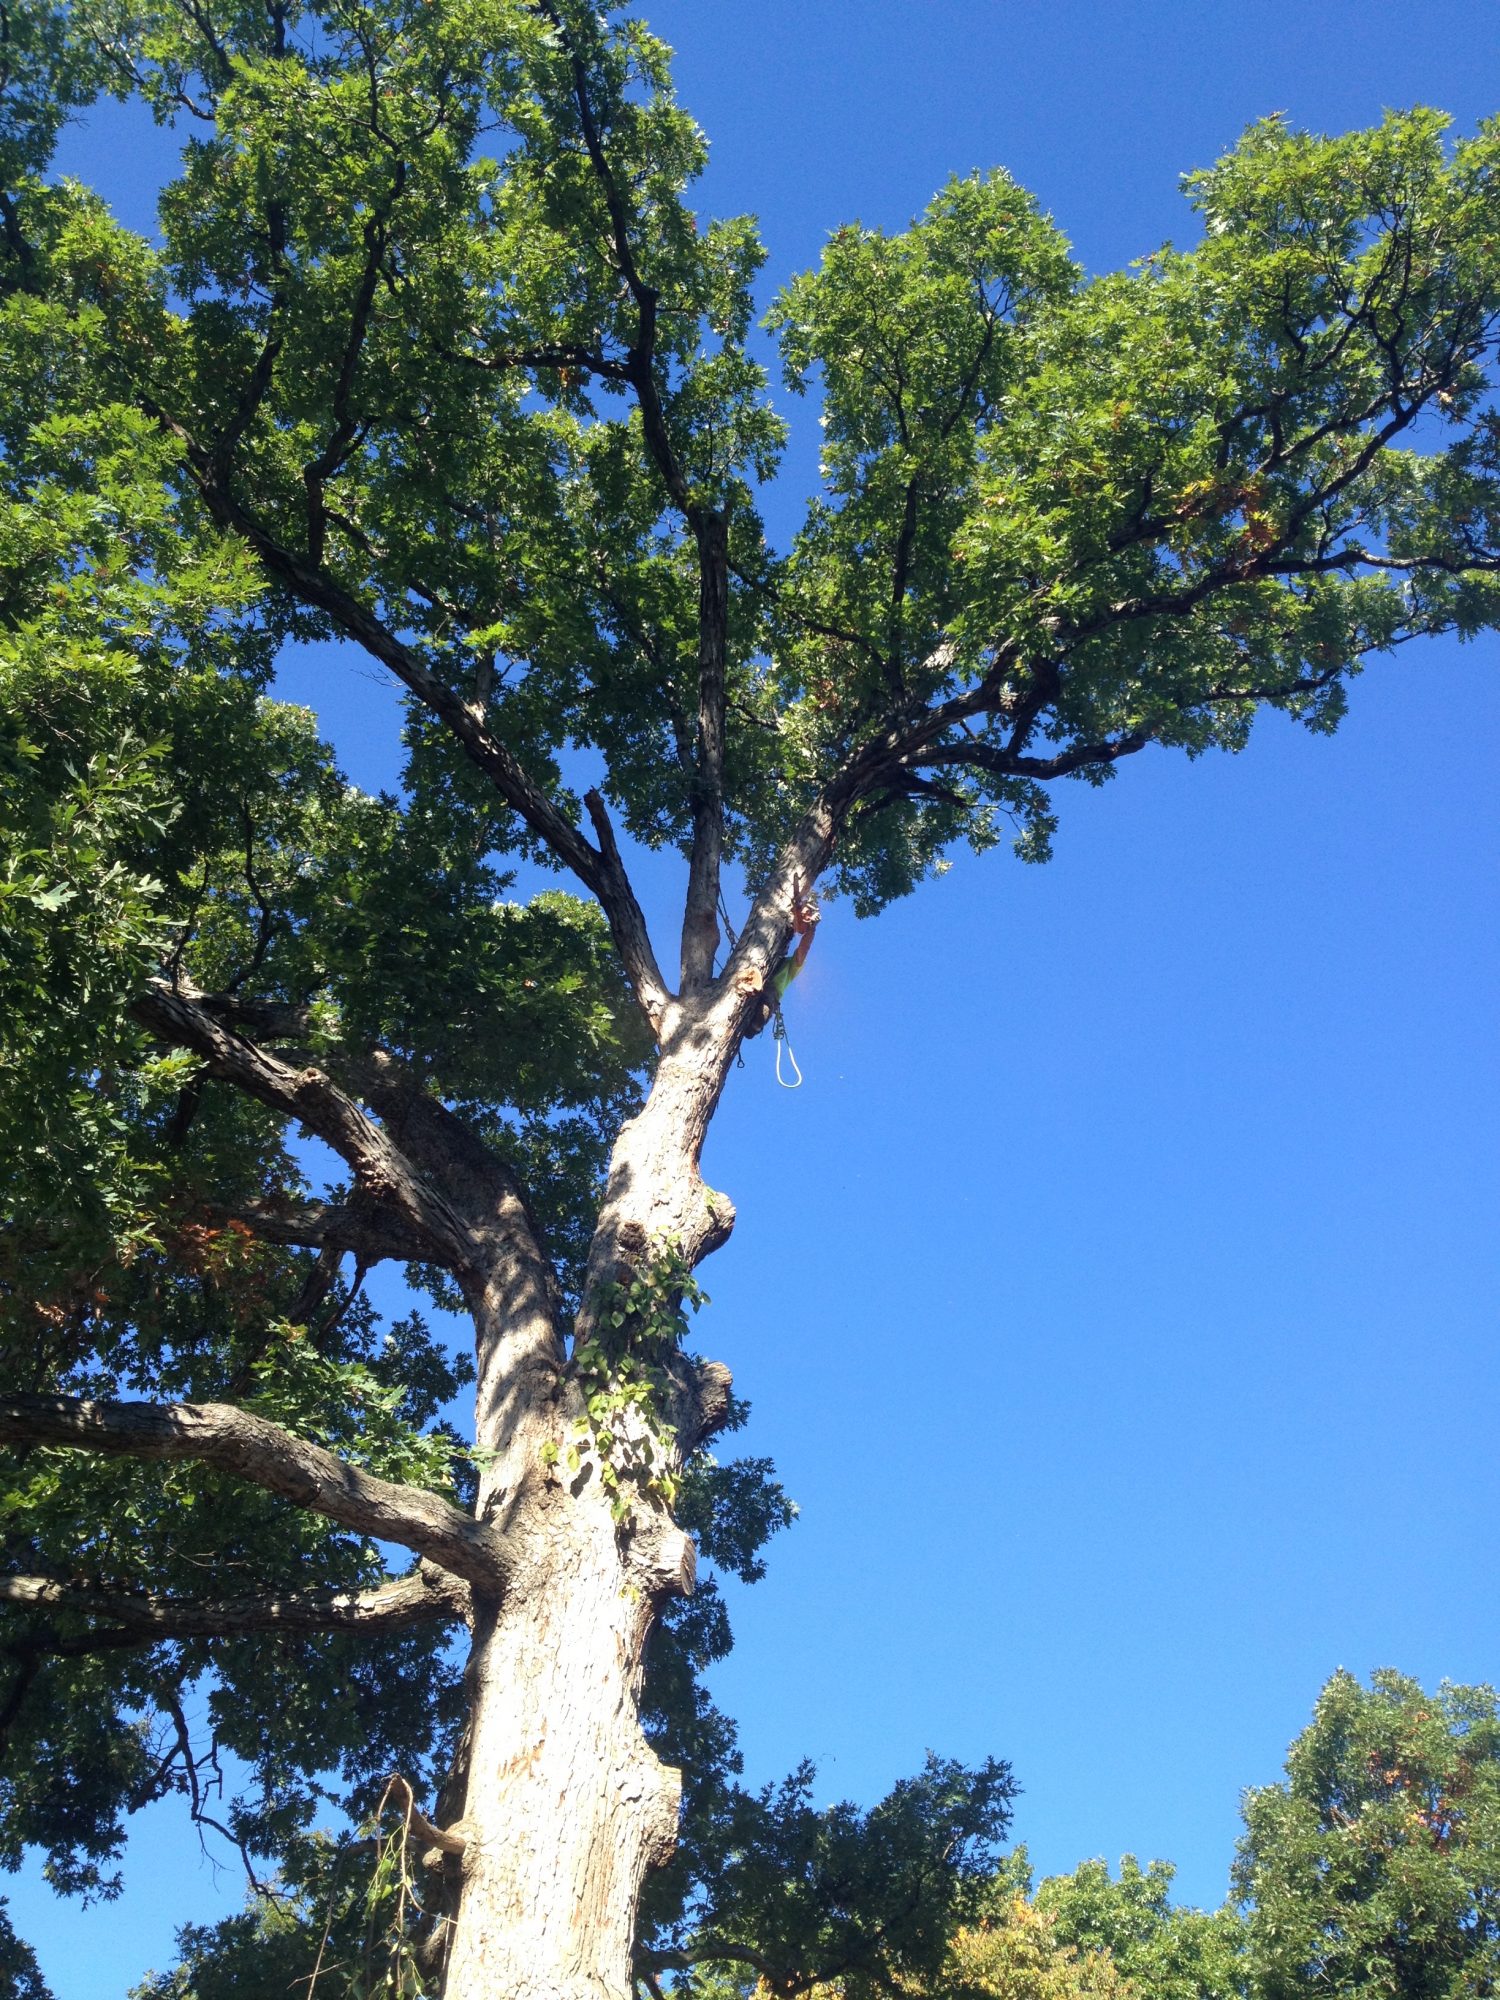 Tree climbing - Tree